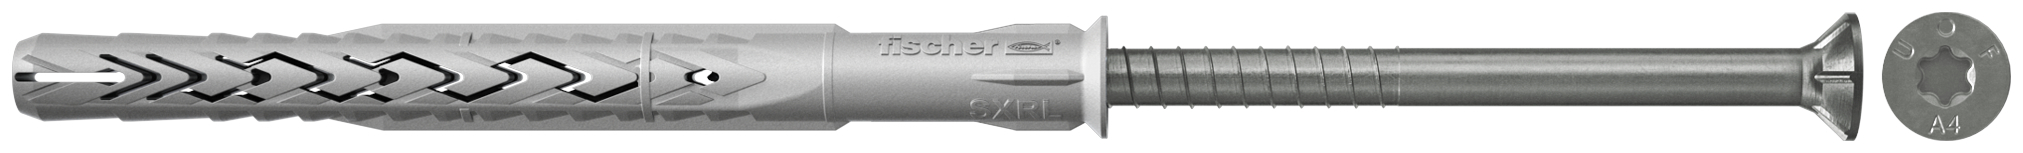 fischer Tasselli prolungati SXRL 8x100 T A4 (1 Pz.) Tassello prolungato in nylon con marcatura CE con vite premontata in acciaio inox A4, T.S.P. impronta torx.